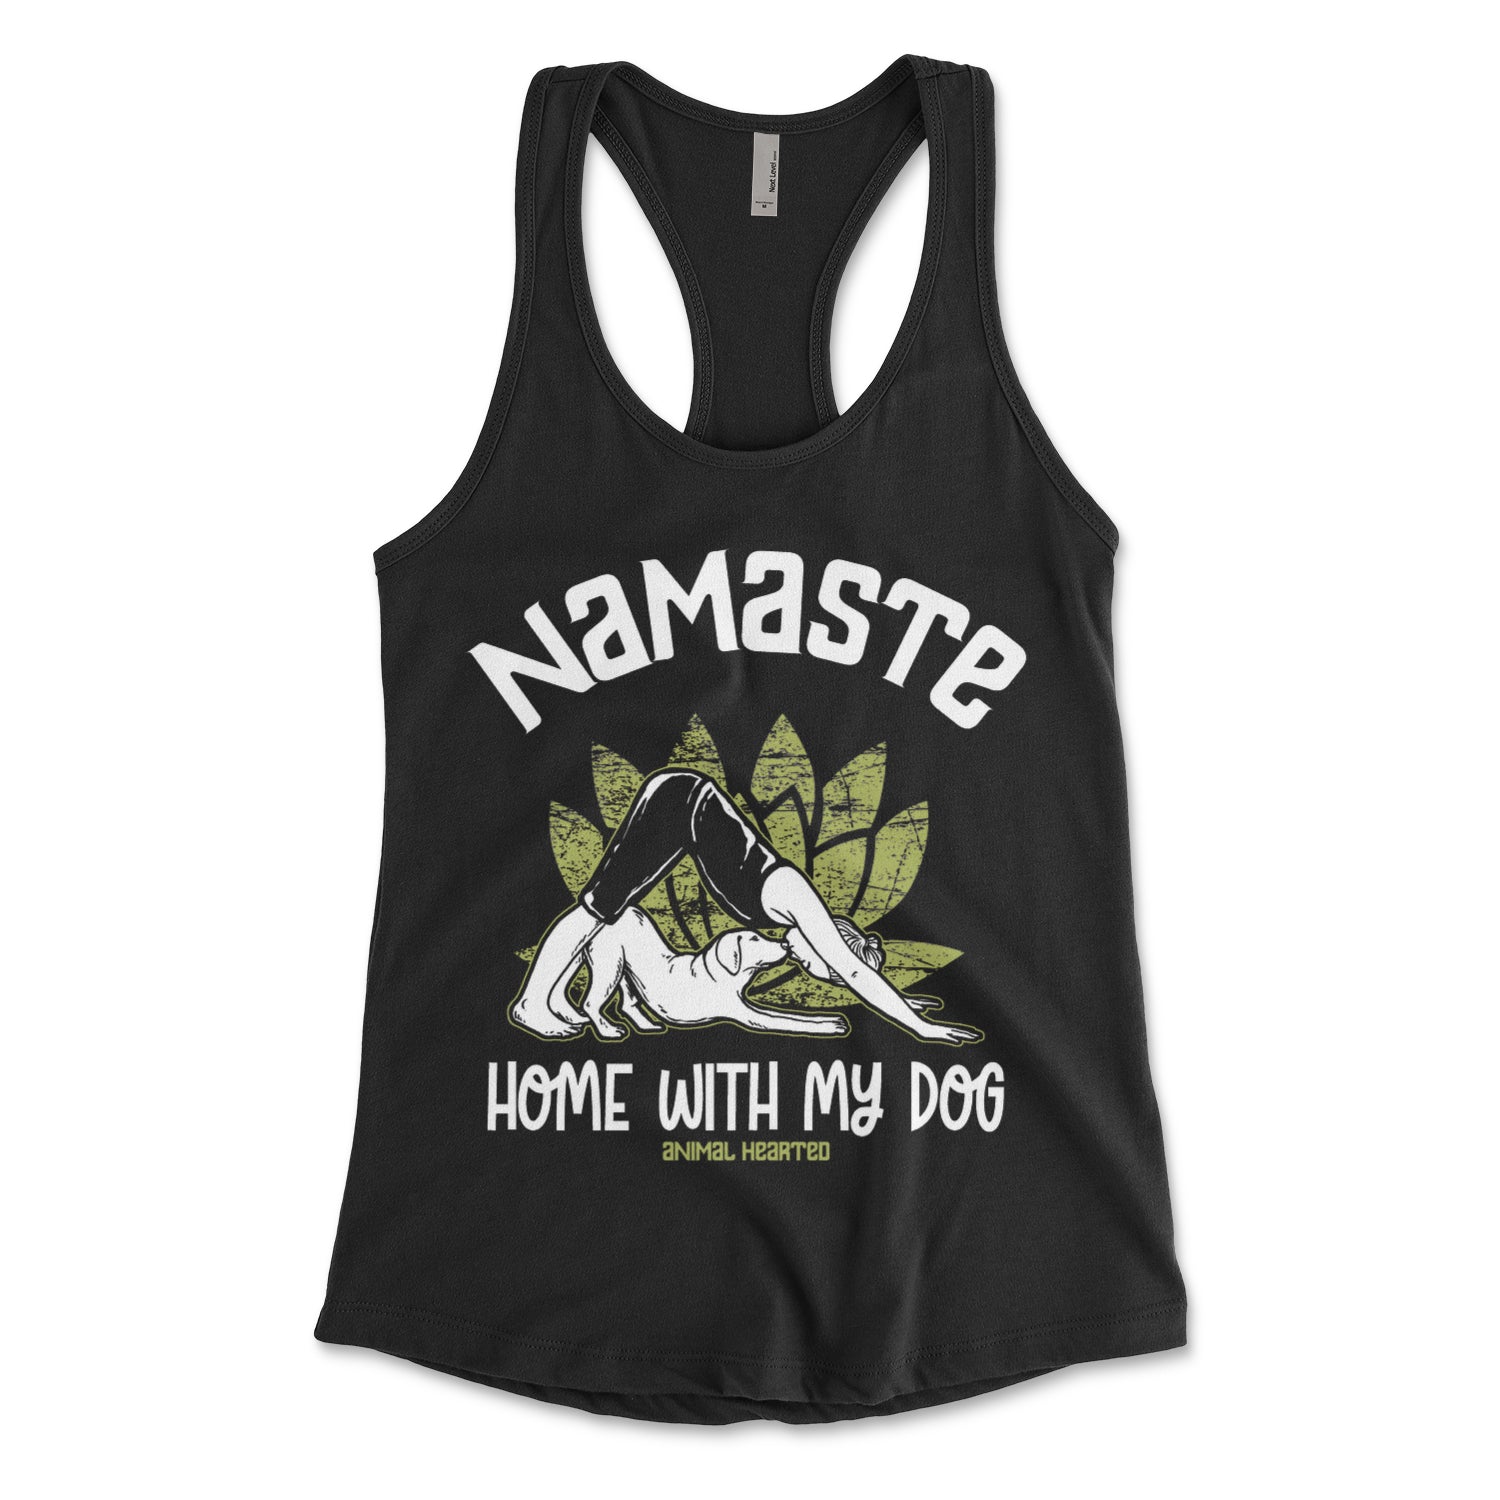 Namaste Hoe Products